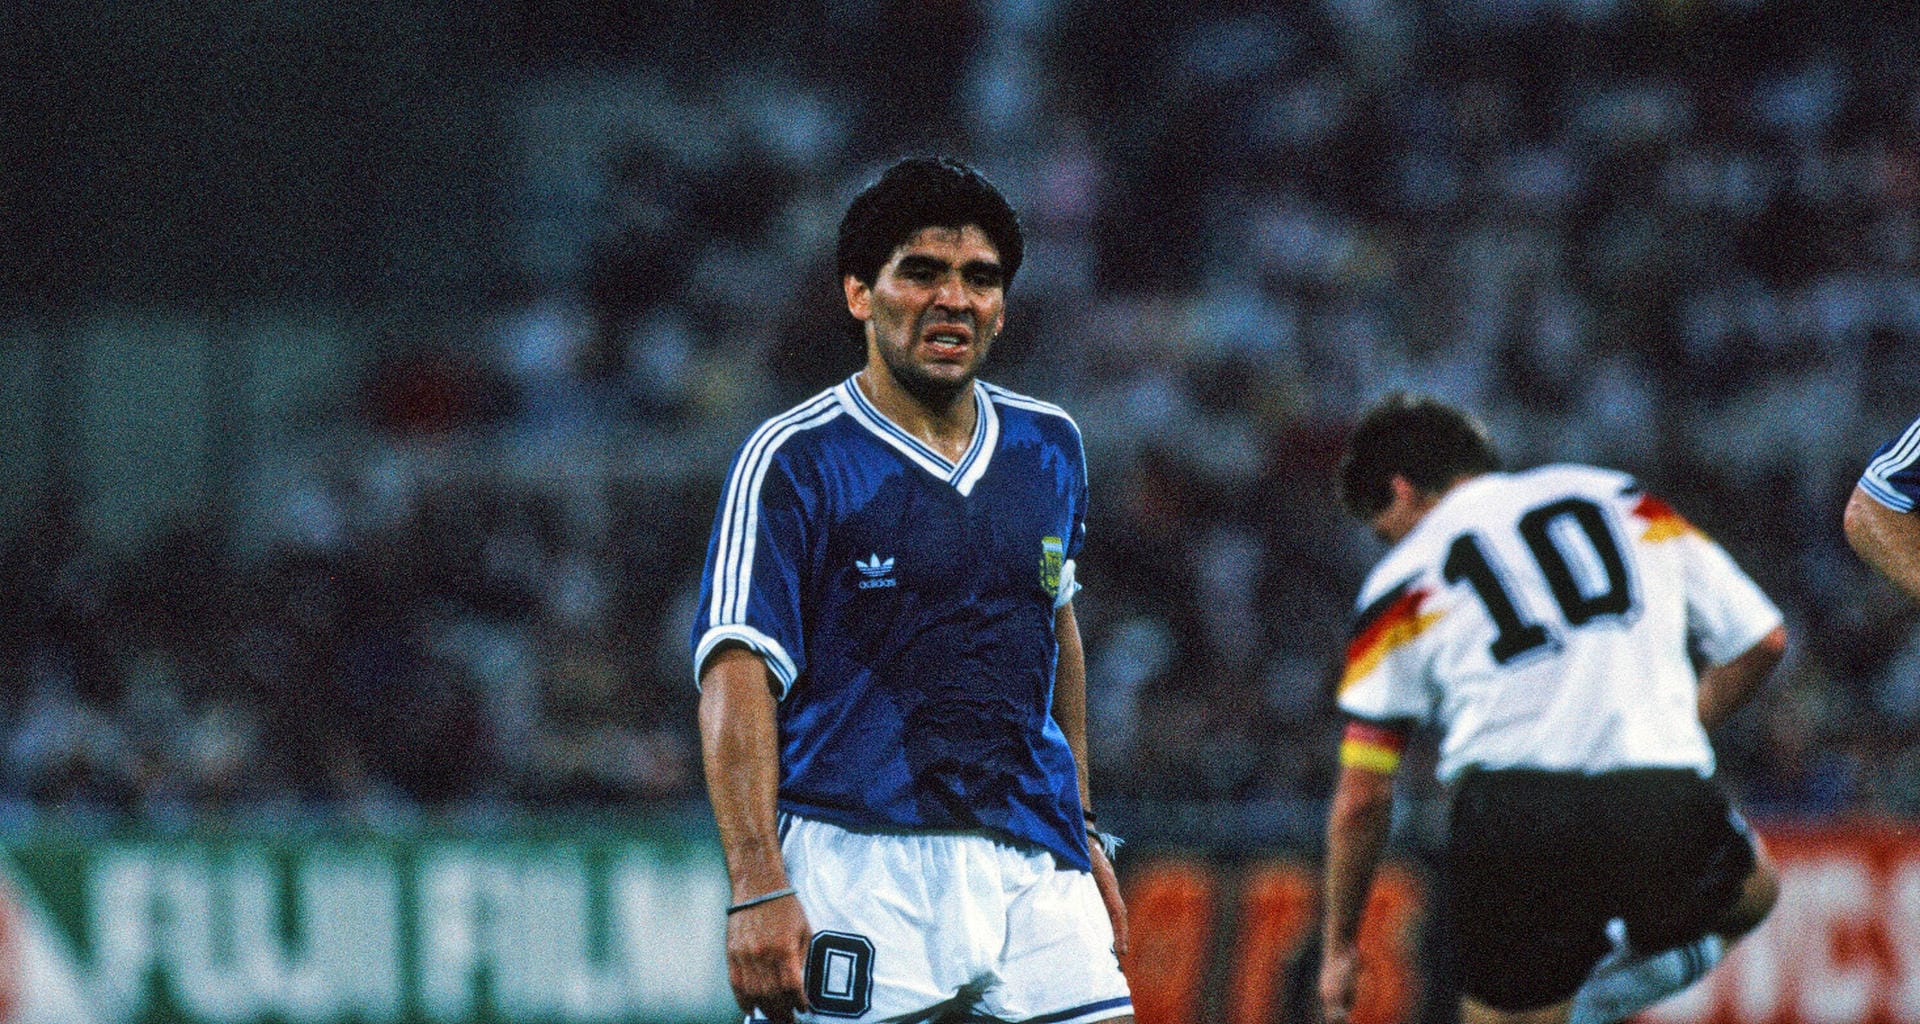 ... Rom erlebte Maradona am 8. Juli 1990 dann eine seiner größten Niederlagen. In der Revanche des vorangegangenen WM-Endspiels unterliegt er mit seinen Argentiniern dem DFB-Team nach Andreas Brehmes legendärem Elfmetertor mit 0:1.